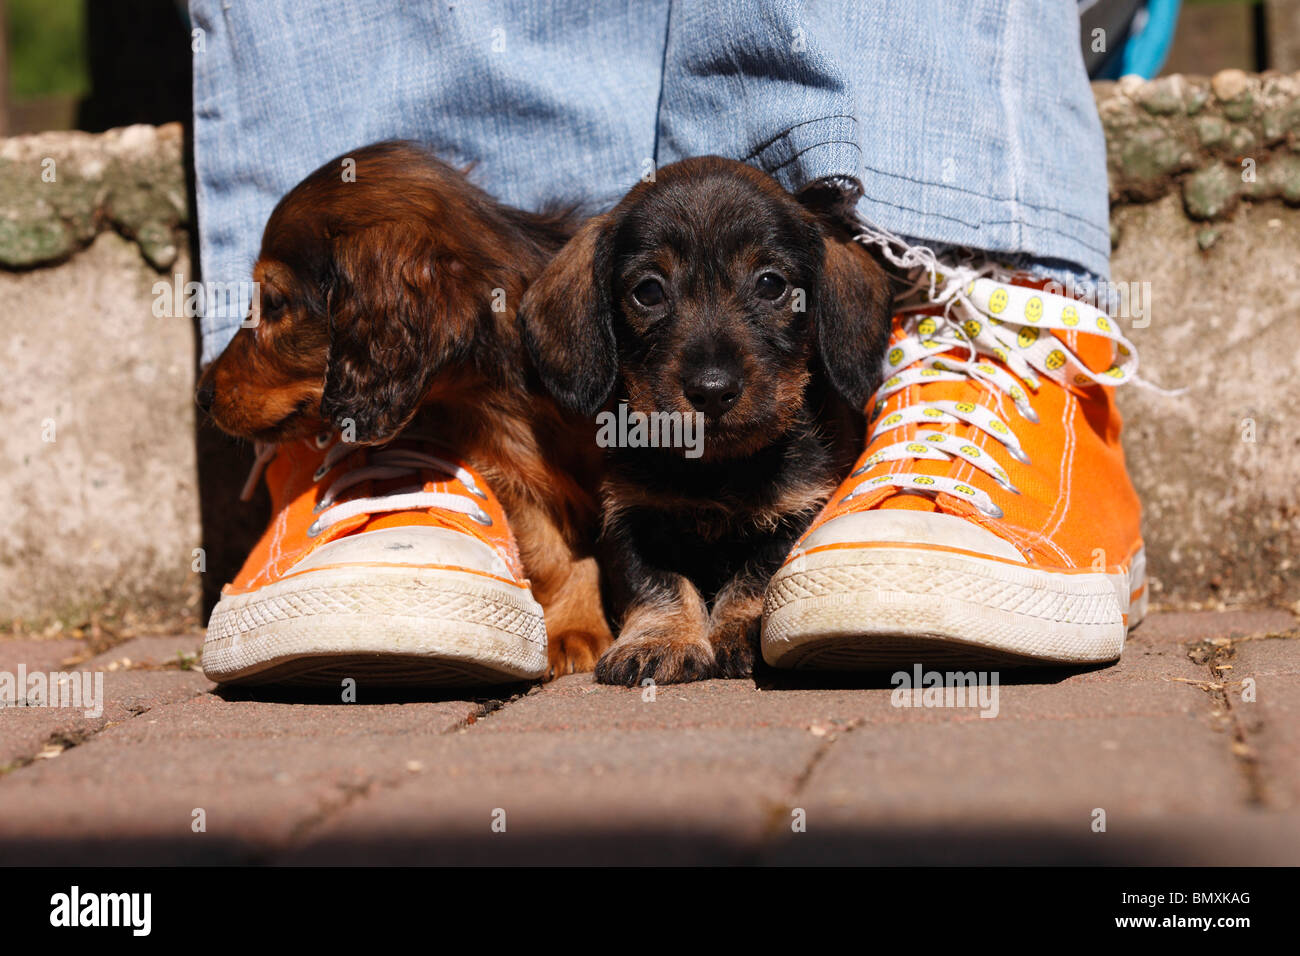 Teckel à poil long, poil long chien saucisse, chien domestique (Canis lupus f. familiaris), deux 6 semaines vieux chien saucisse miniature Banque D'Images